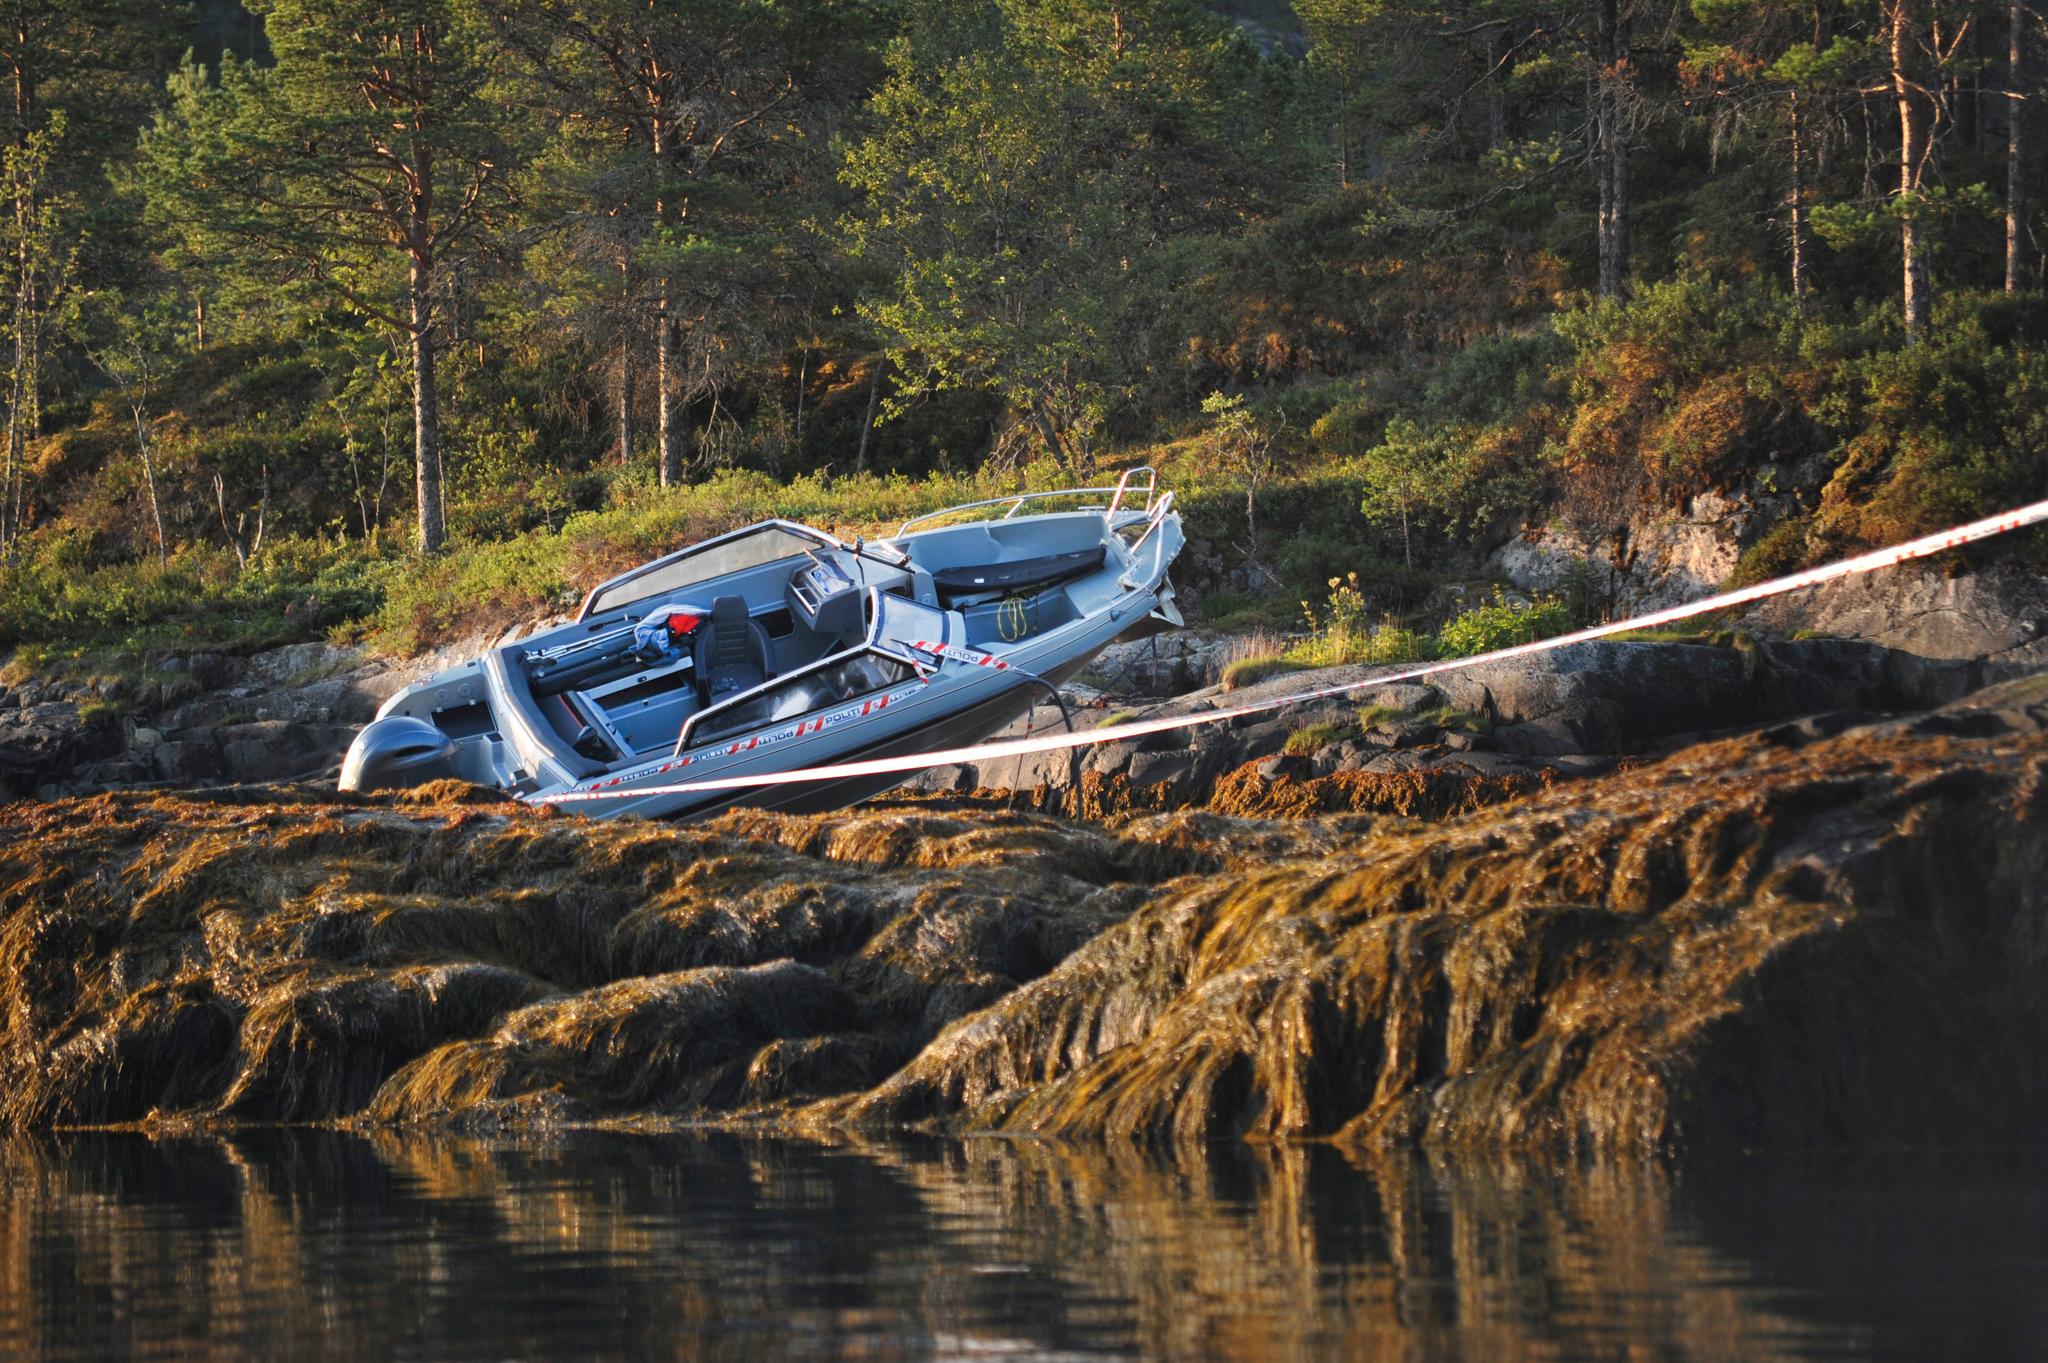 Malvik-ordfører Ingrid Aune og kjæresten Eivind Olav Kjelbotn Evensen mistet livet i en båtulykke 1. august i fjor. 